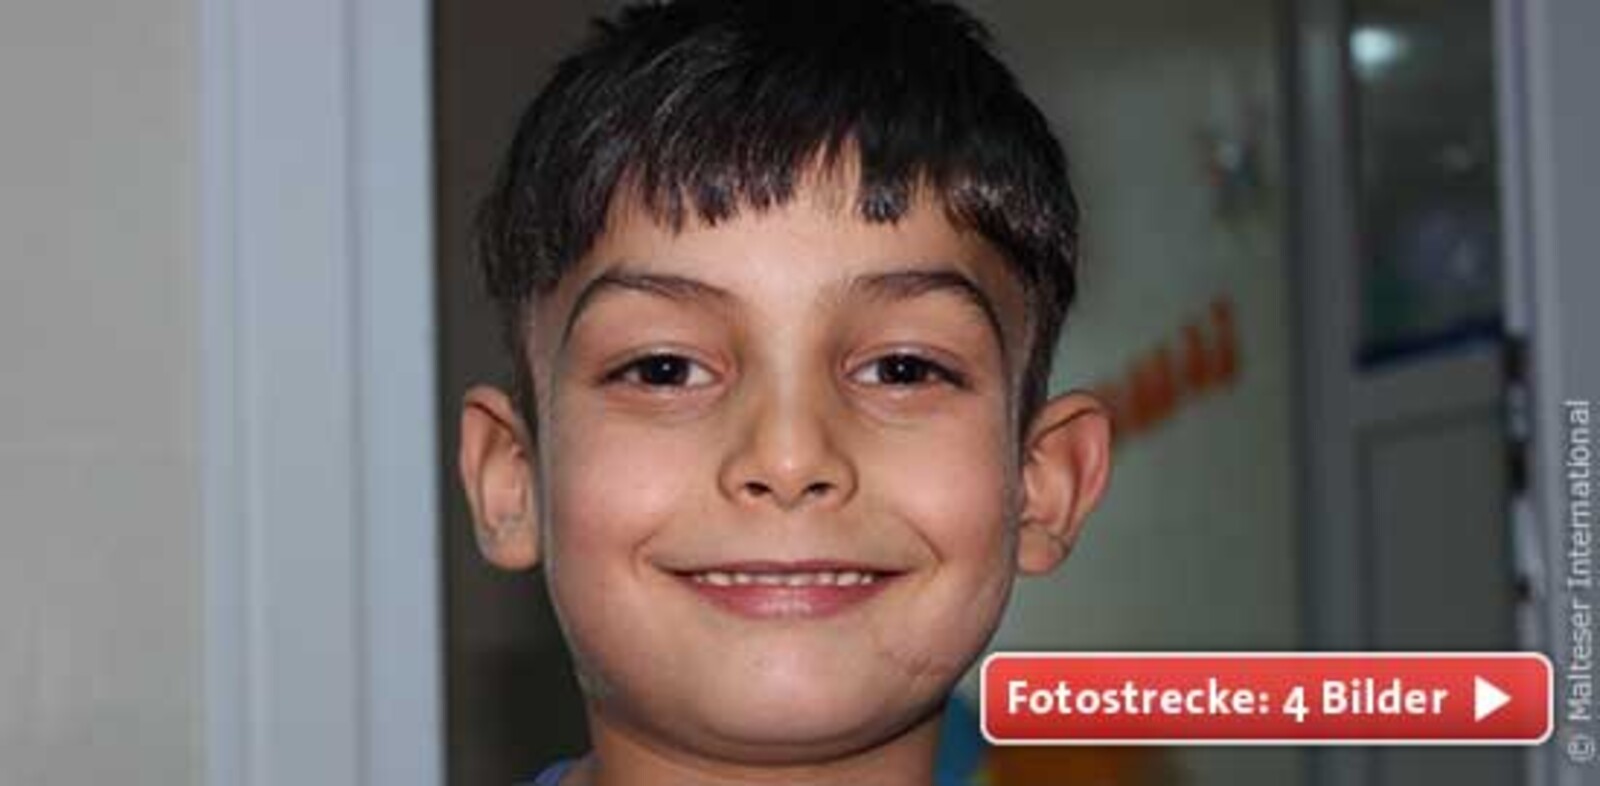 Habib ist gemeinsam mit seiner Mutter aus der syrischen Stadt Aleppo in die Türkei geflüchtet. Durch Granatsplitter einer Bombe wurde sein Bein schwer verletzt. Er musste mehrfach operiert werden